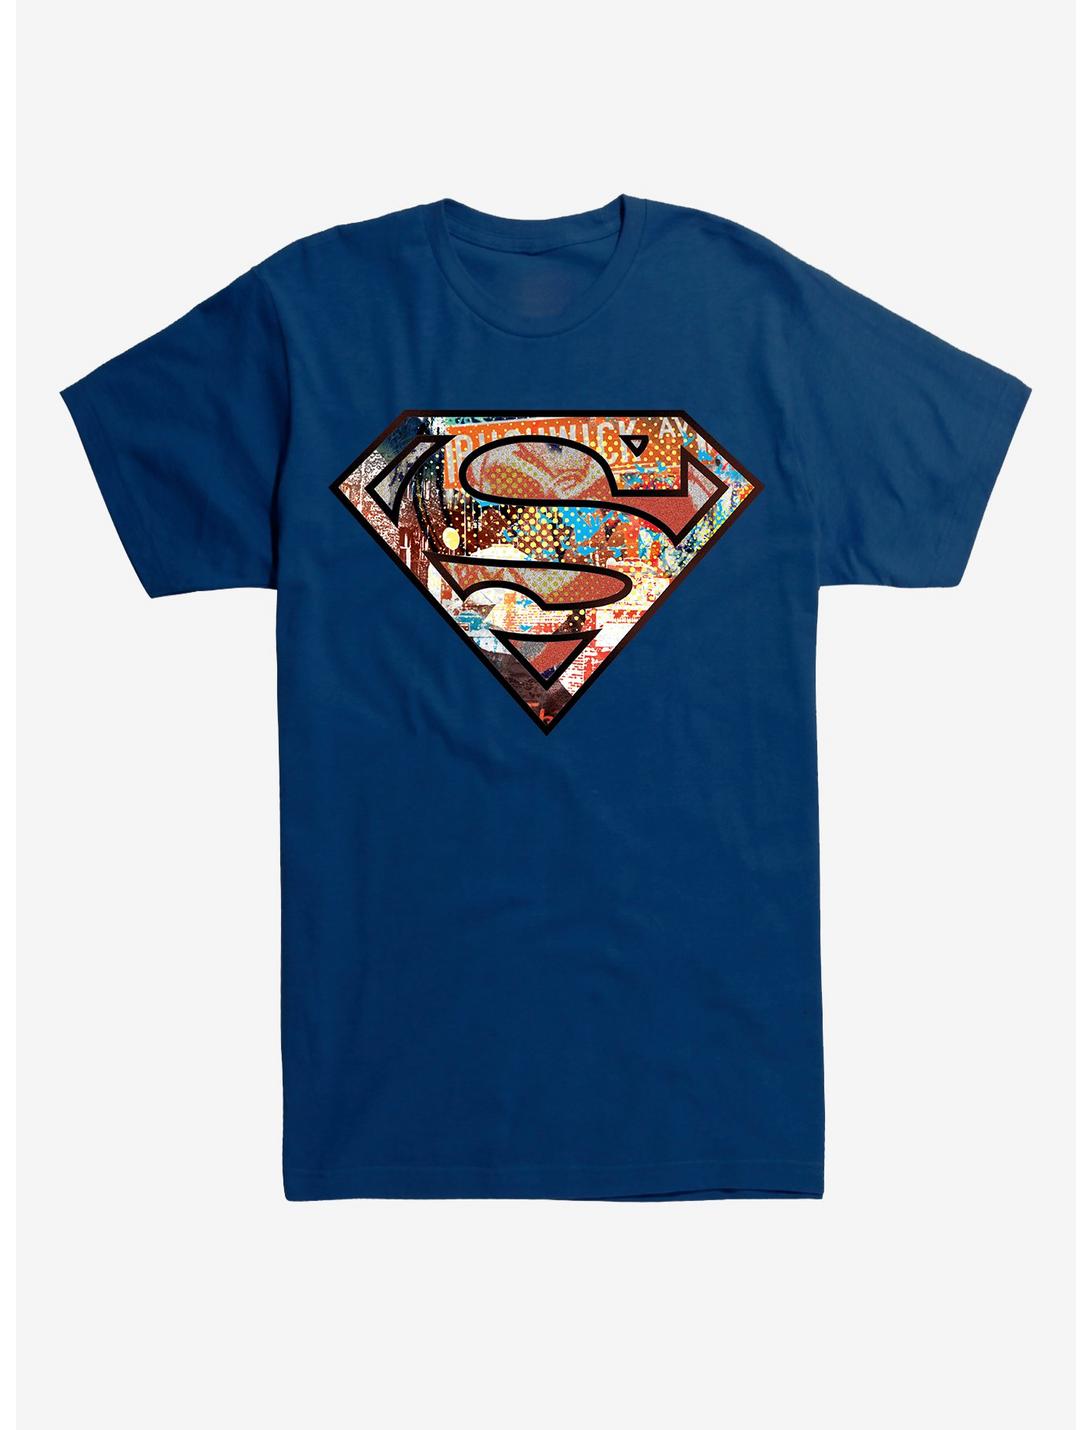 DC Comics Superman Pop Art Logo T-Shirt, , hi-res